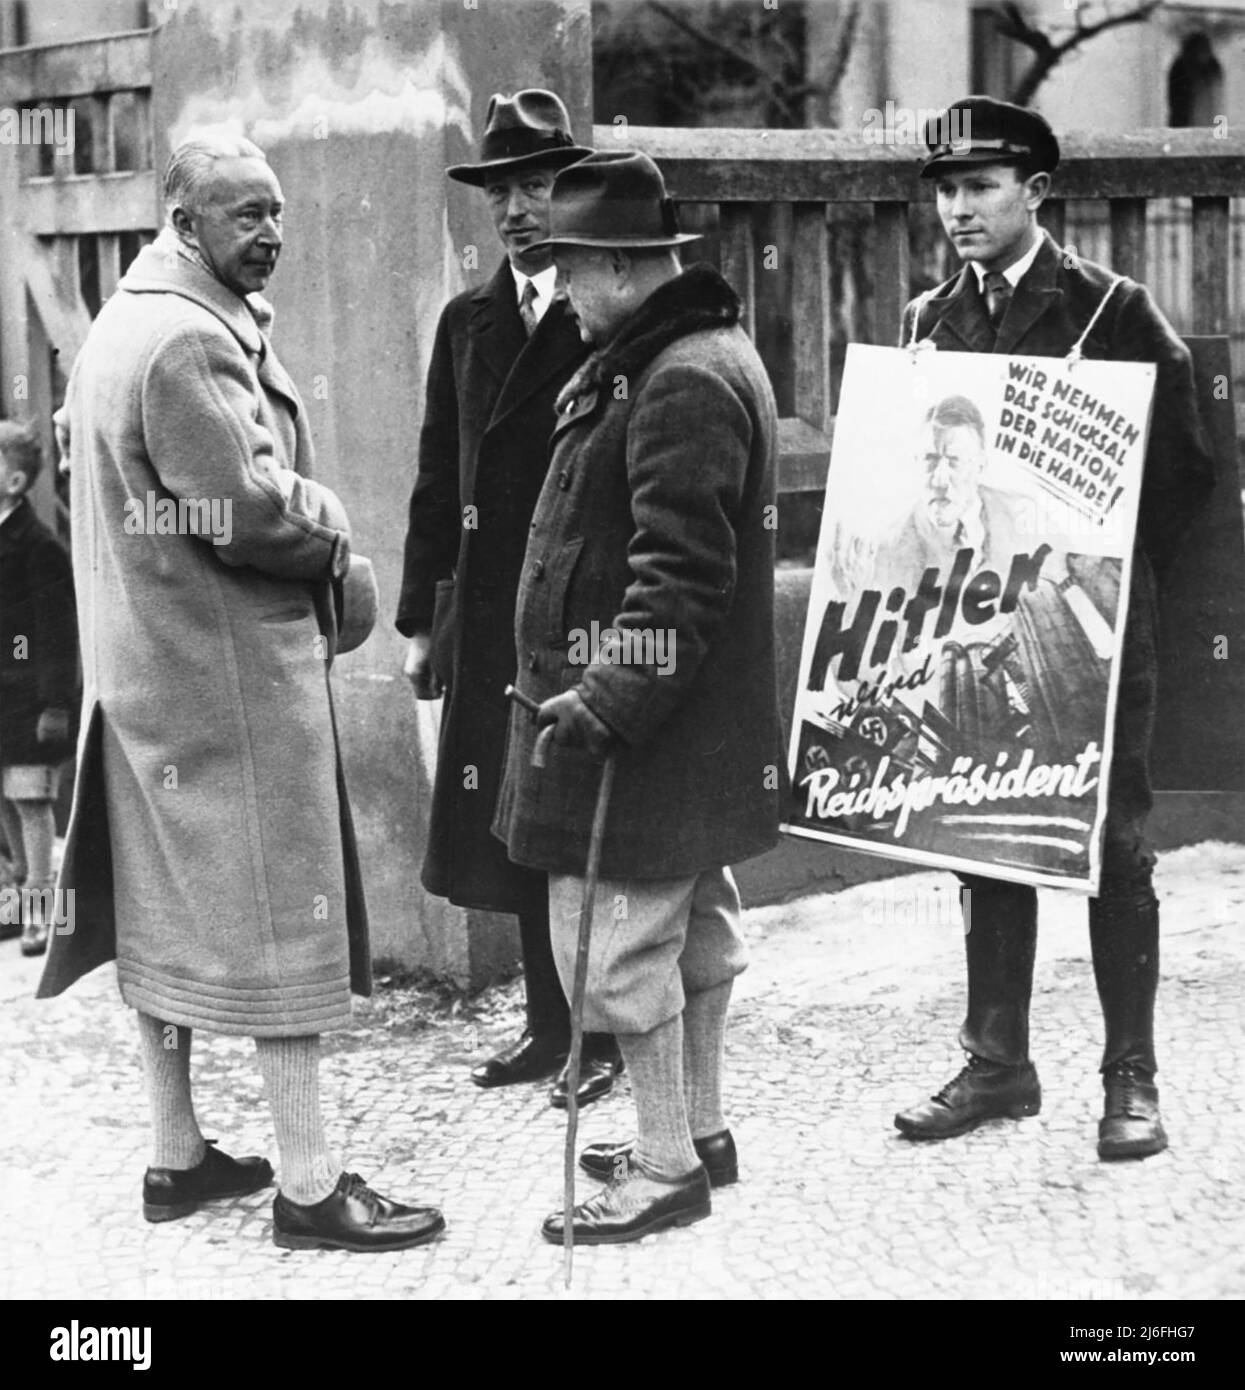 WILHELM German Crown Prince (1882-1951) avec les sympathisants d'Hitler lors des élections présidentielles de 1932 Banque D'Images